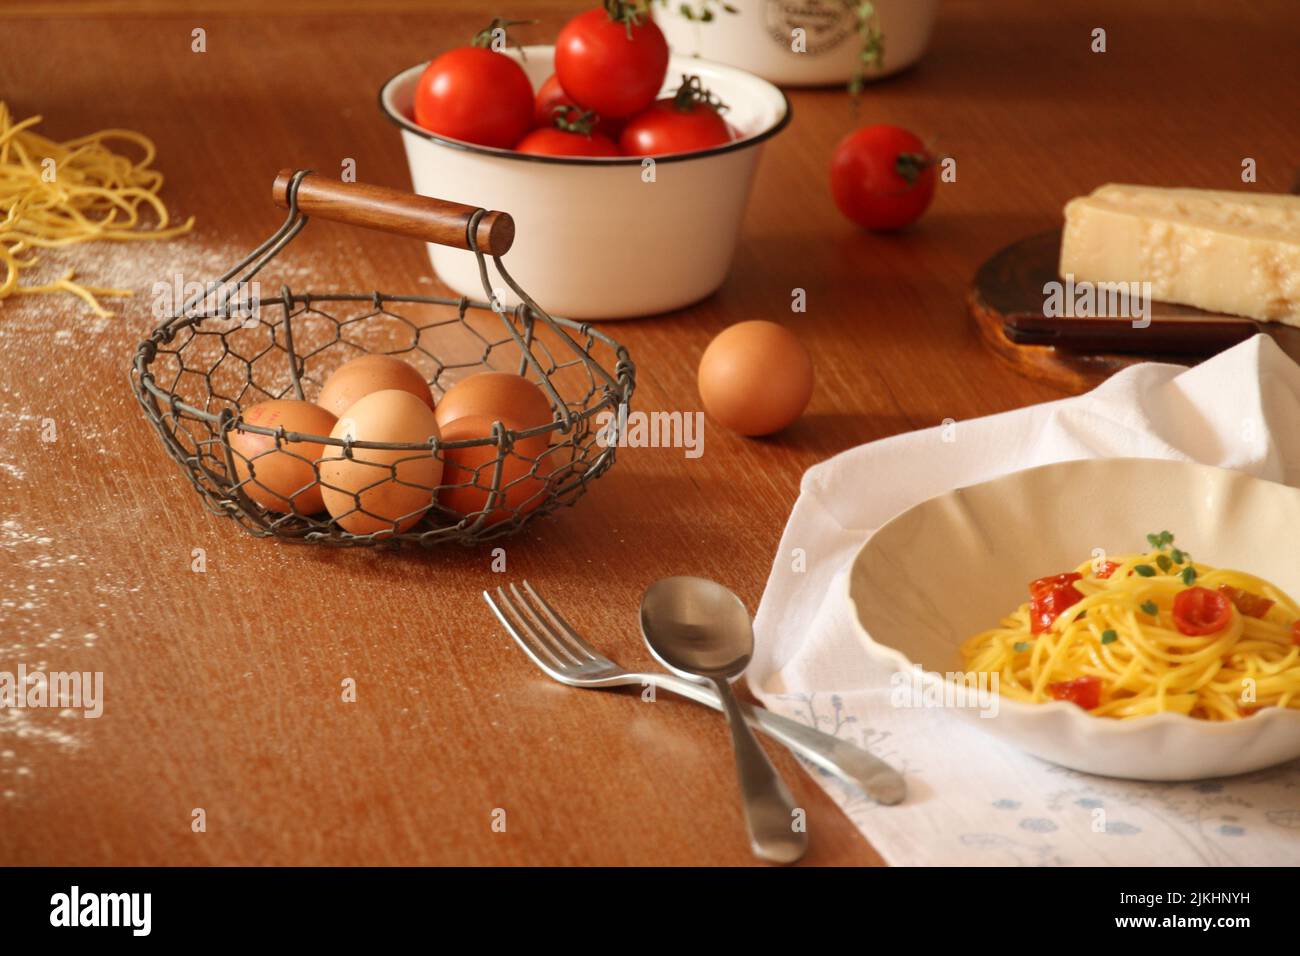 Stillleben eines hölzernen Küchentischs mit rohen Eiern und Tomaten, Käse und gekochter Pasta Stockfoto